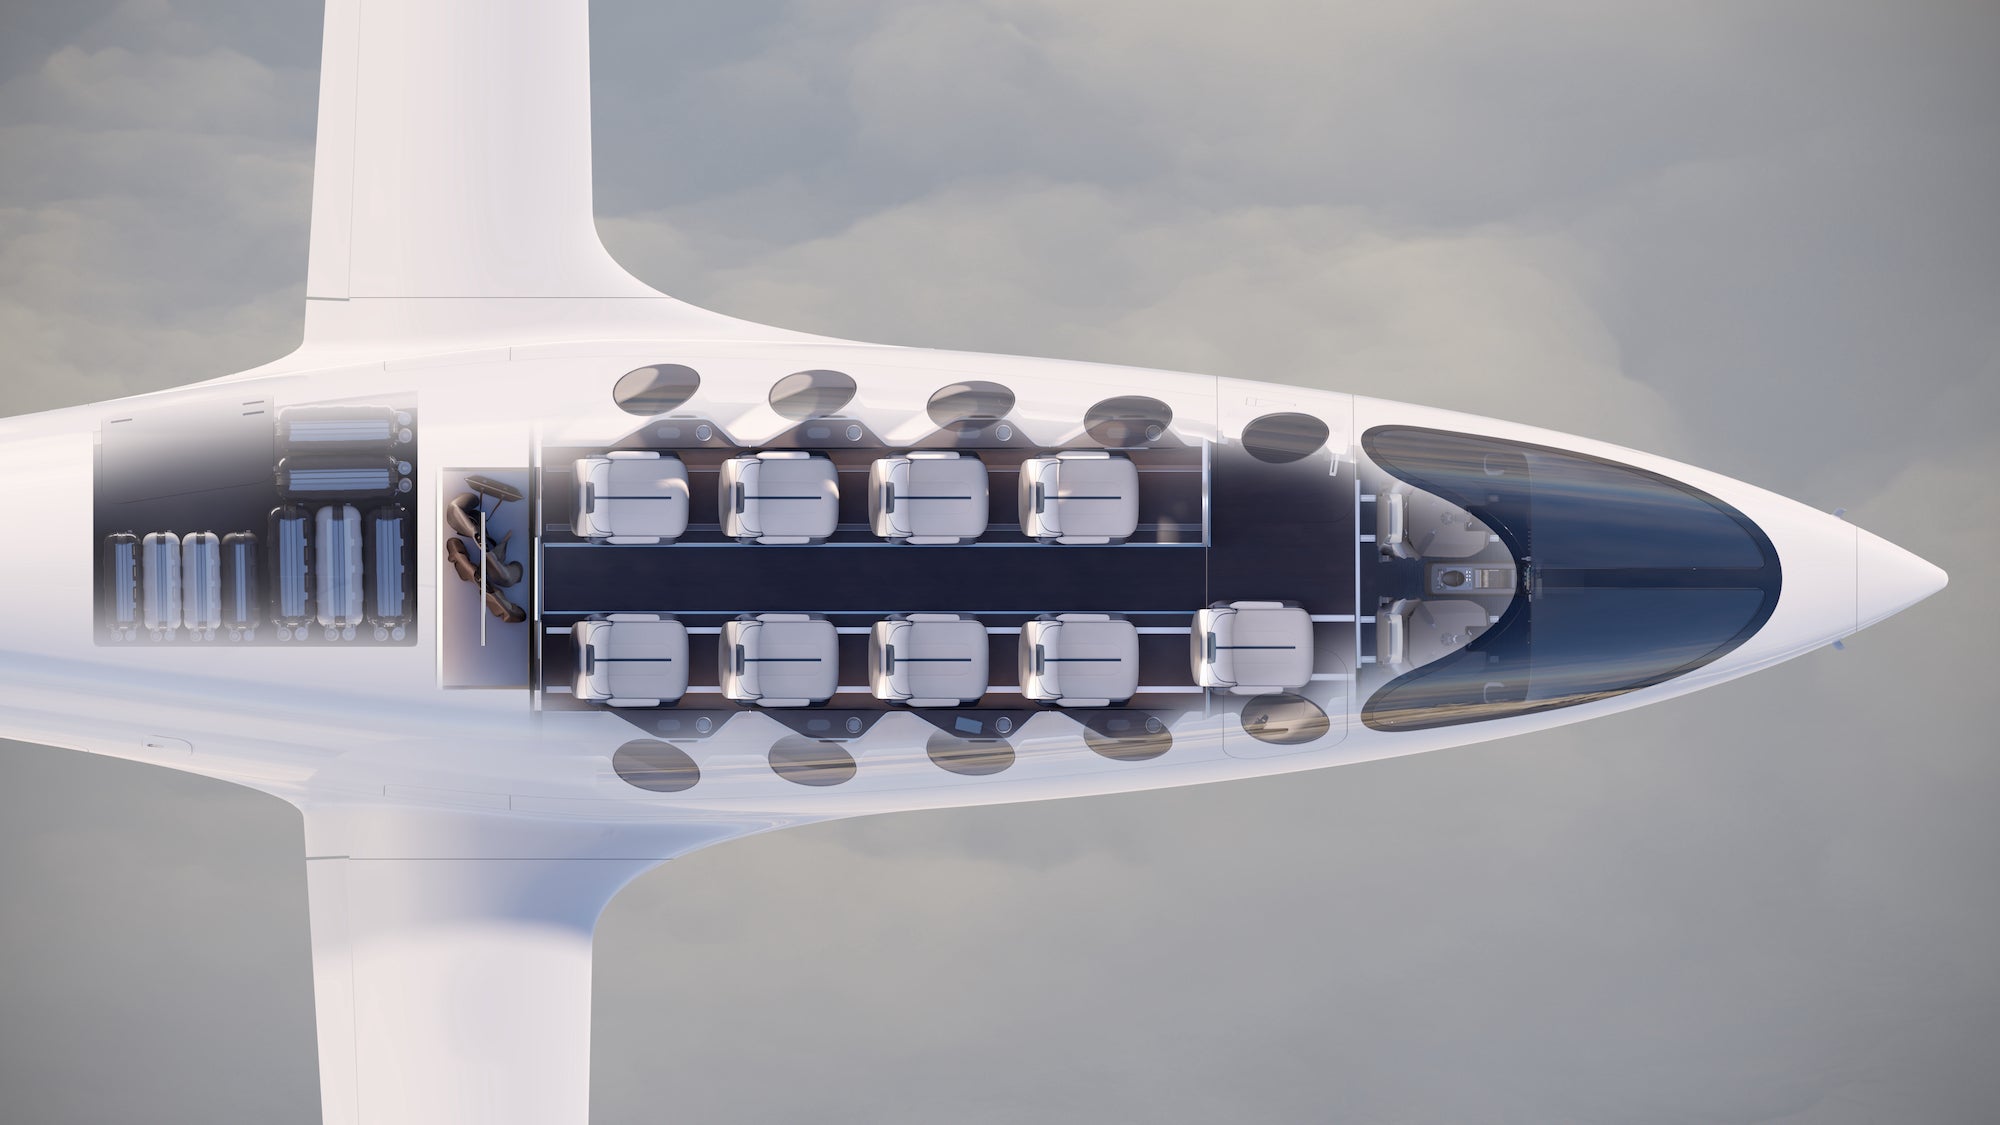 Echa un vistazo a la prueba en tierra de alta velocidad de este elegante avión eléctrico